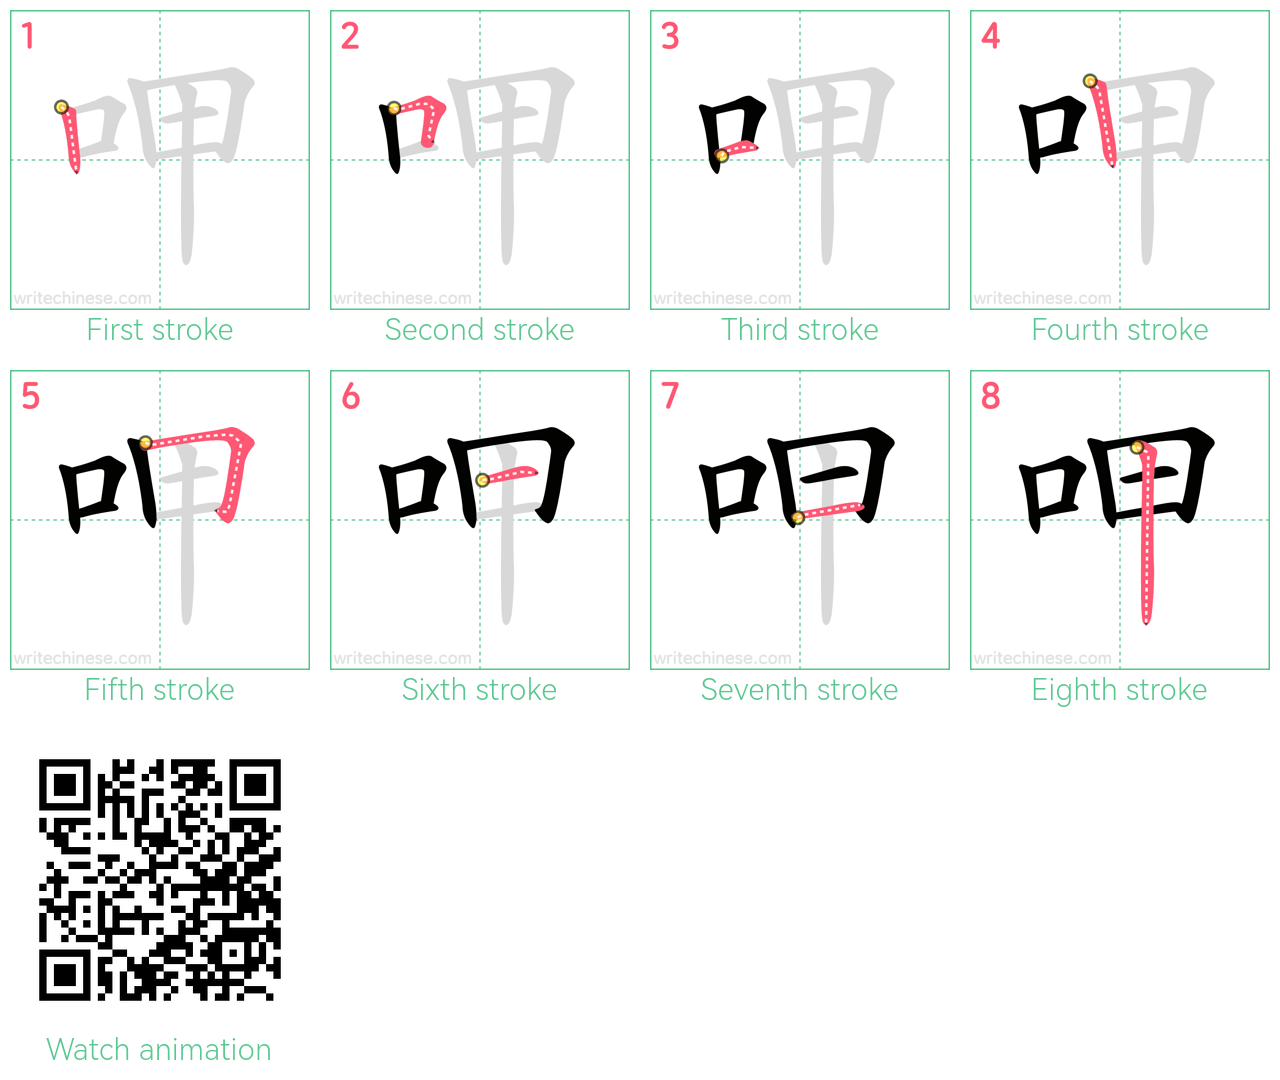 呷 step-by-step stroke order diagrams